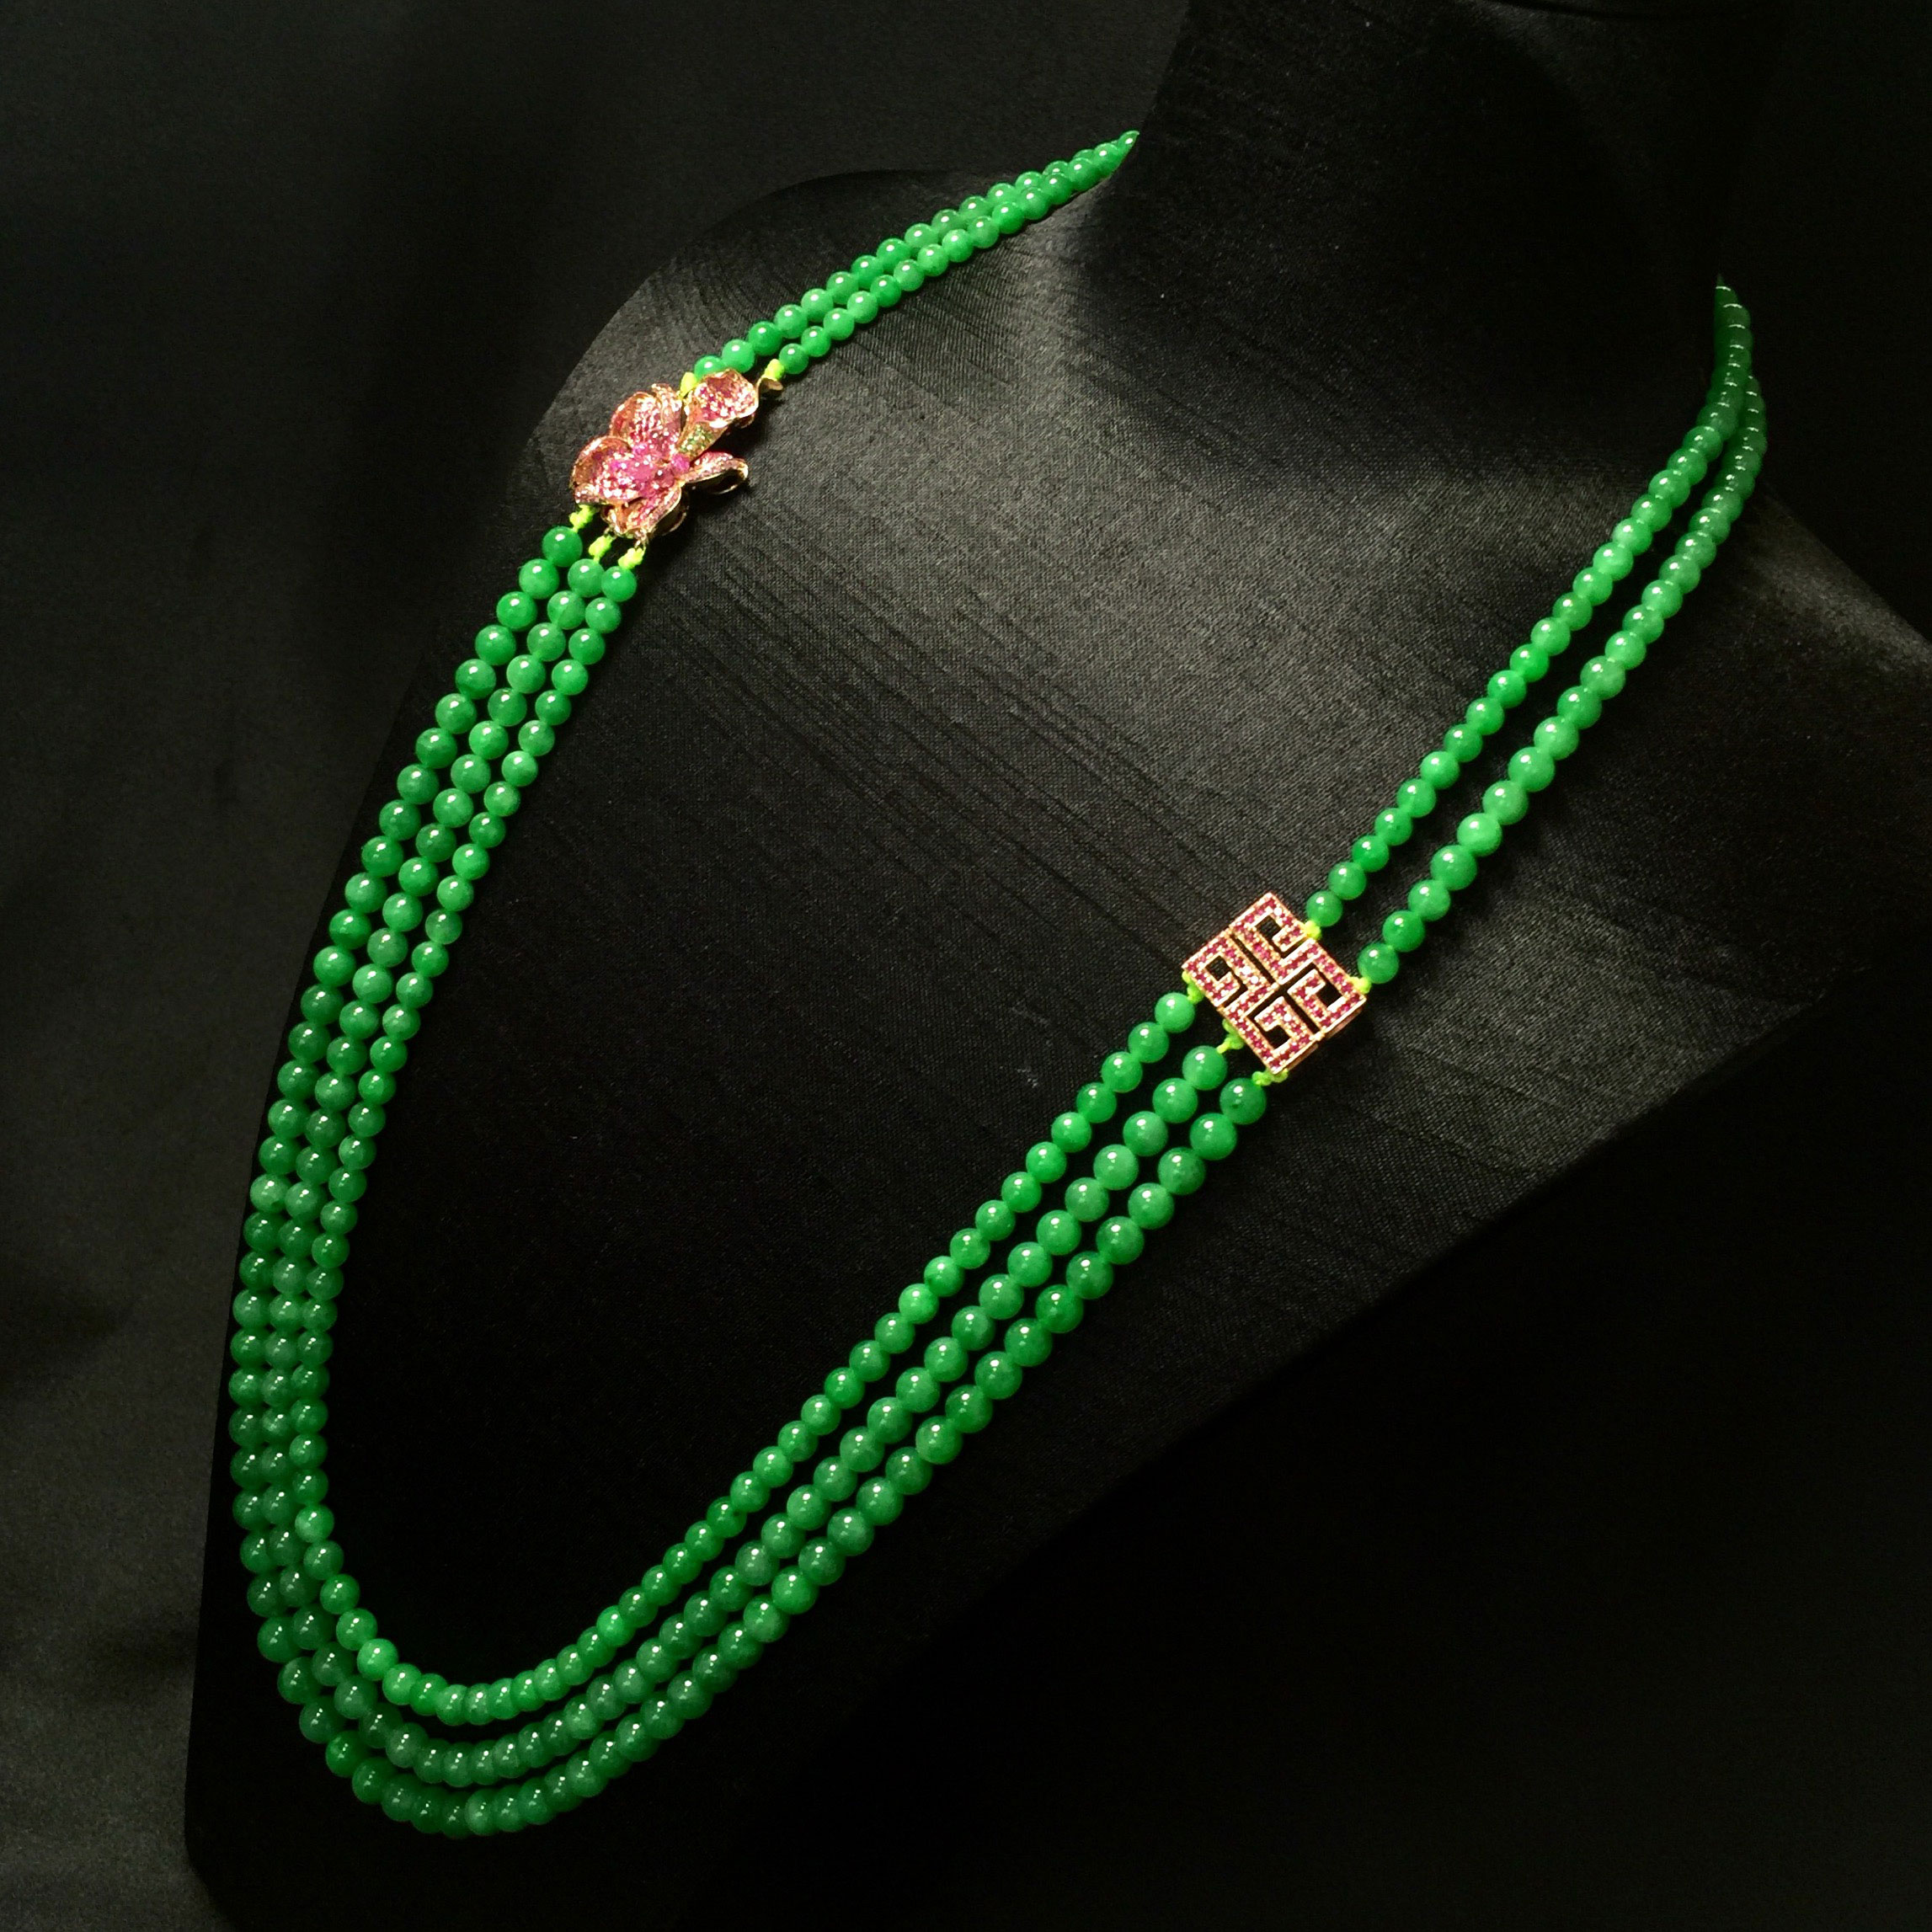 96    【描述】冰种满色翡翠珠链  珠子颜色均匀,底子细腻,款式精致